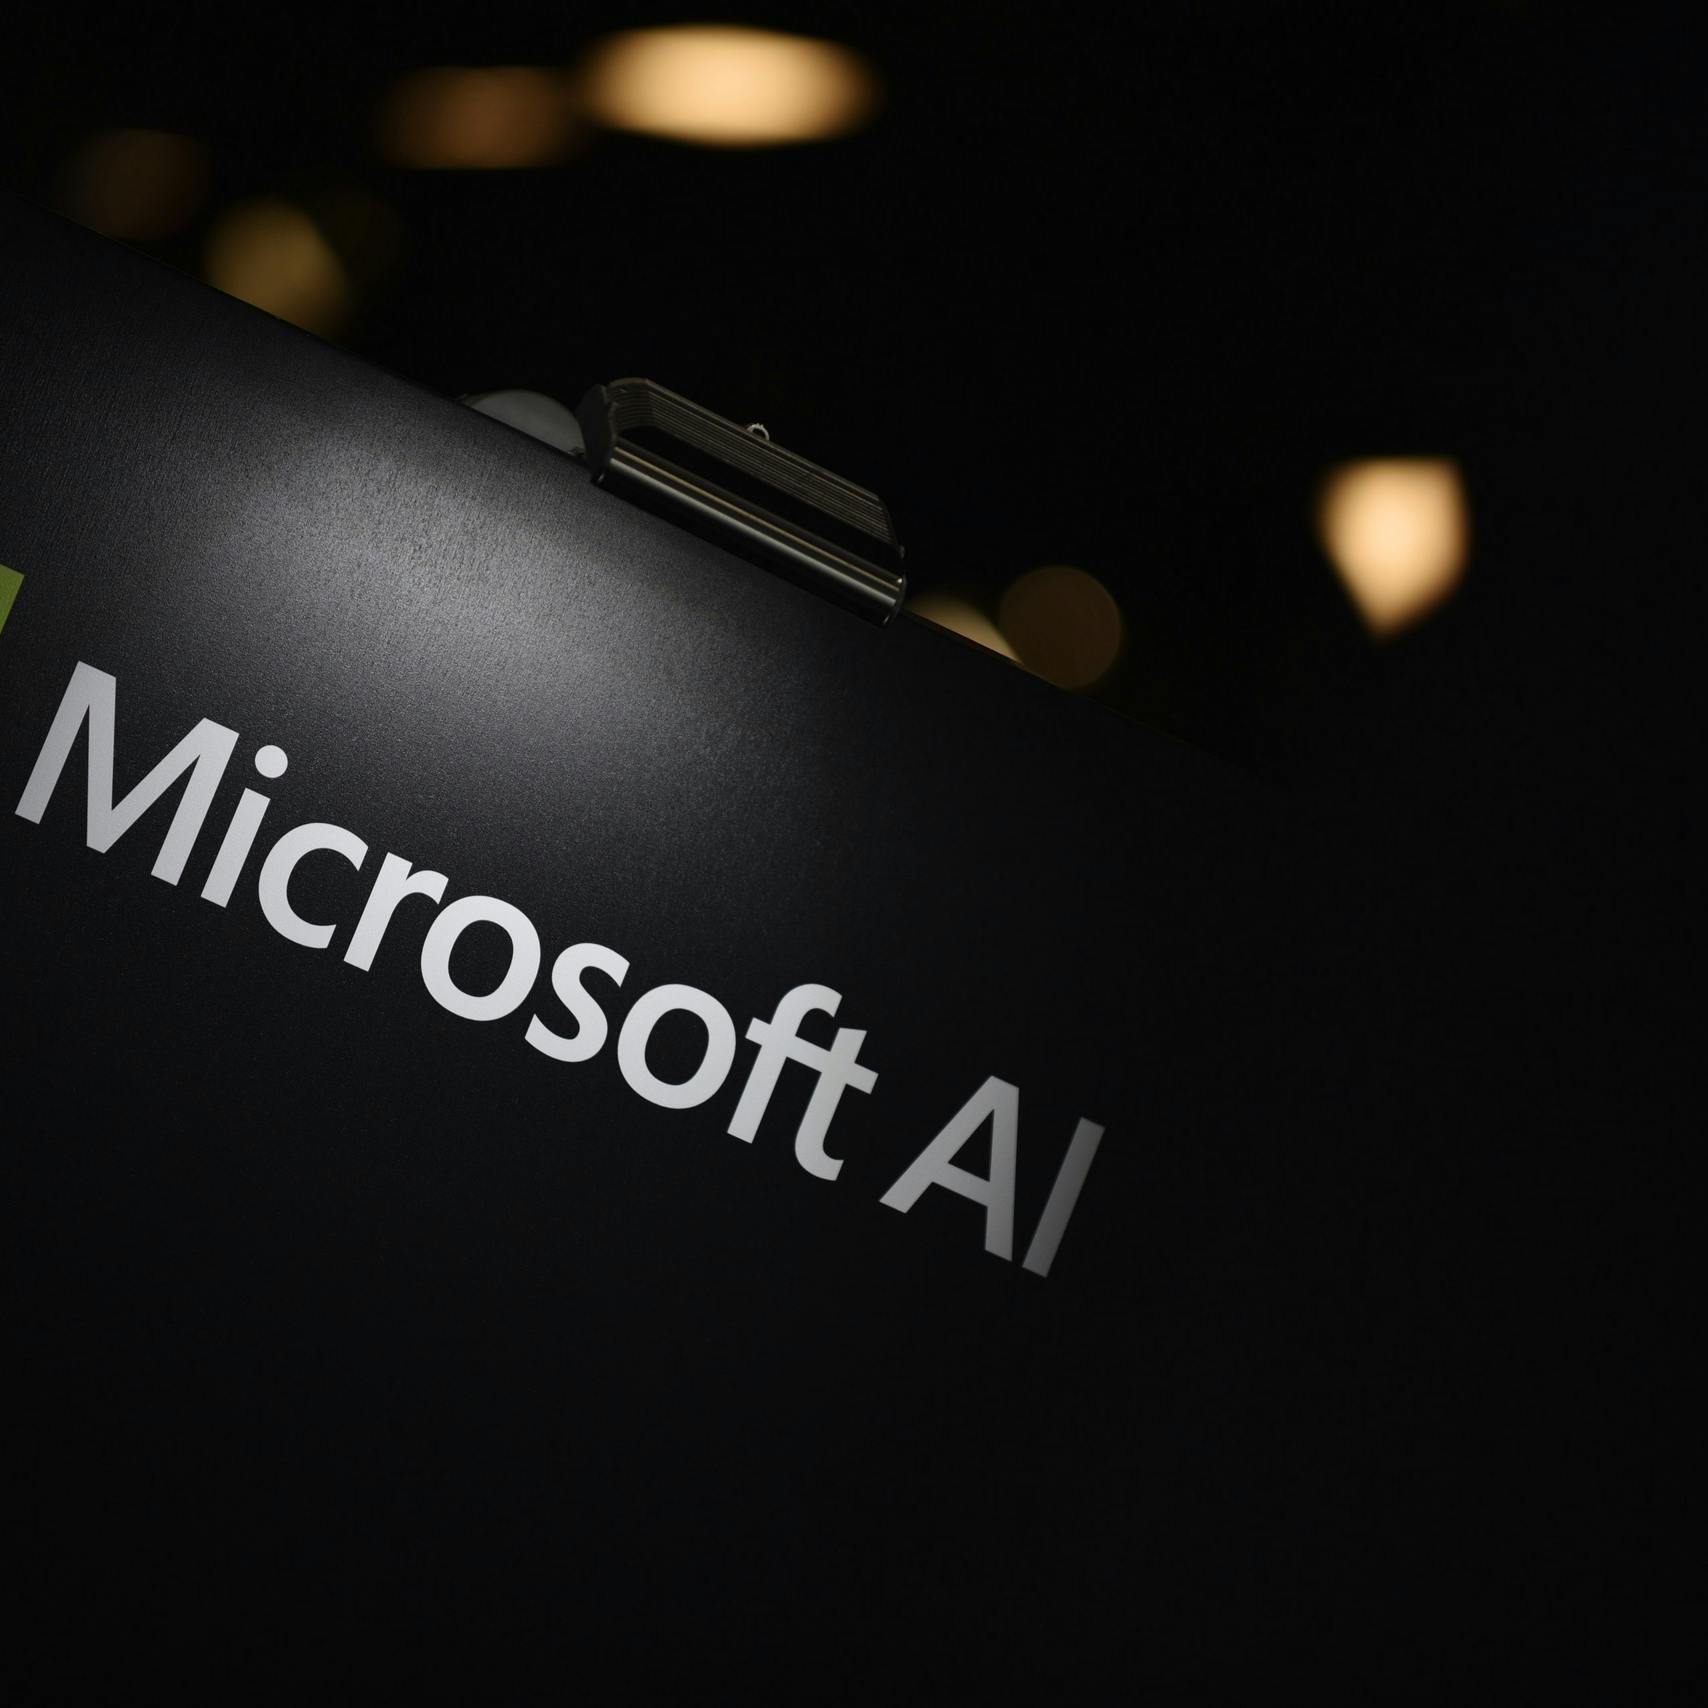 Microsoft steekt miljarden in AI-tool ChatGPT